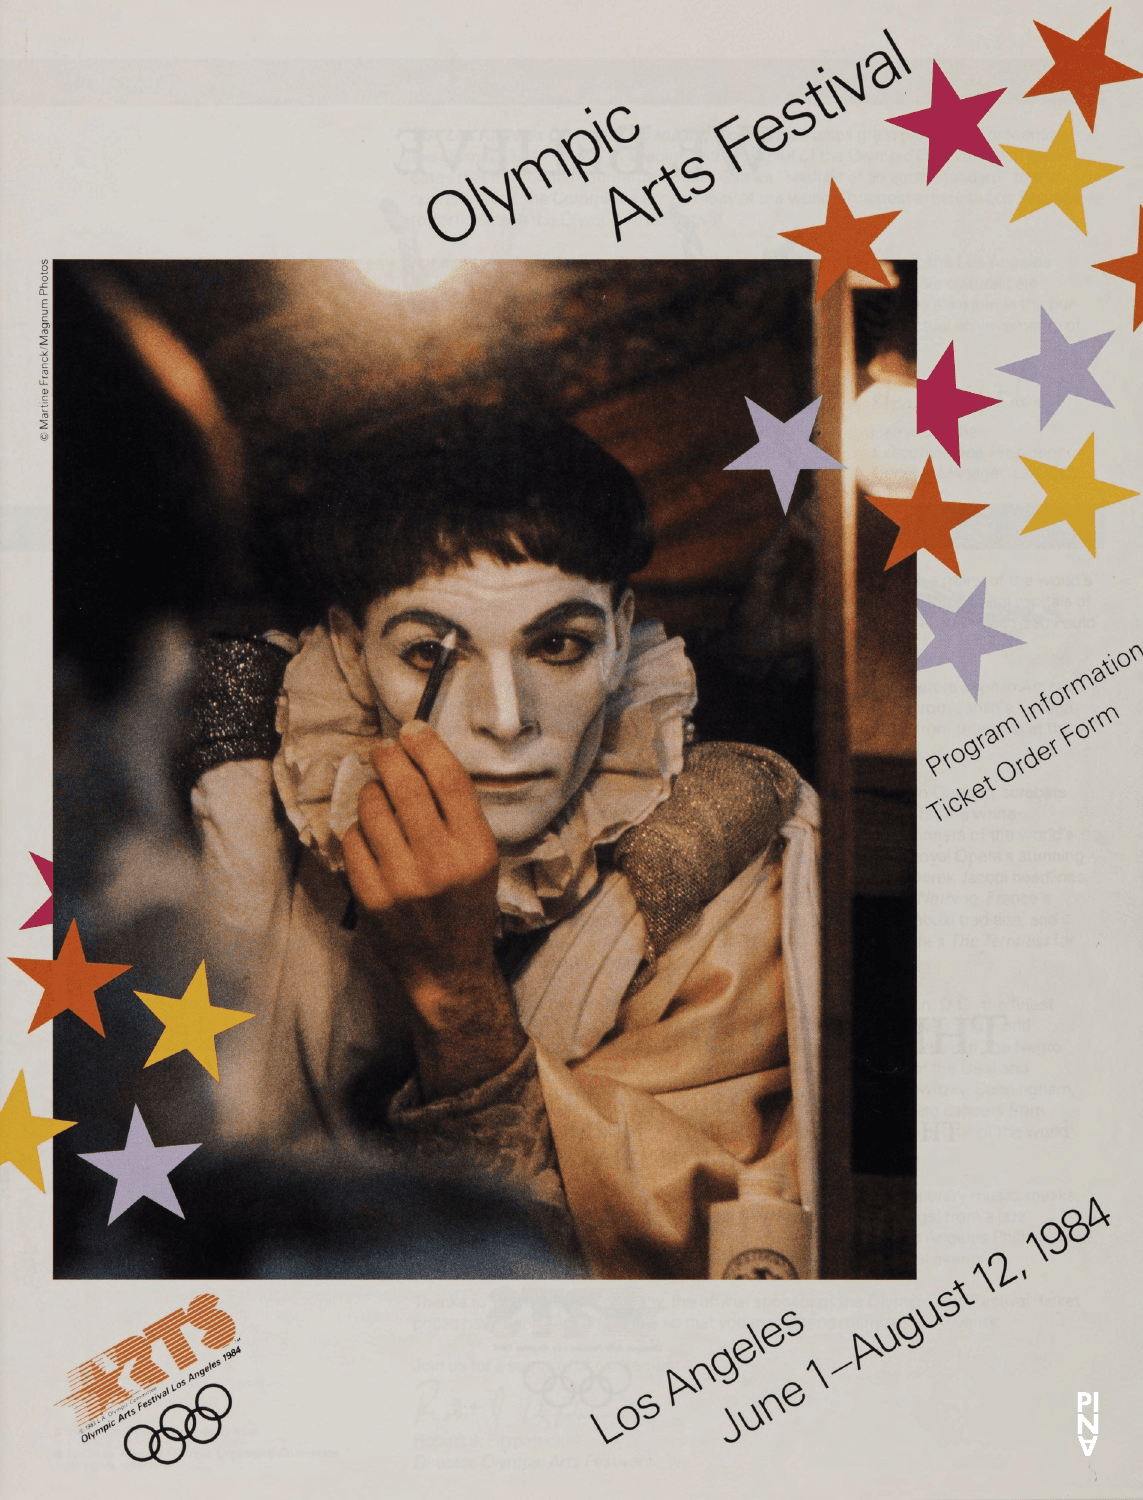 Calendrier des spectacles pour « Café Müller », « Le Sacre du printemps », « 1980 – Une pièce de Pina Bausch » et « Barbe-Bleue. En écoutant un enregistrement sur bande magnétique de l’opéra de Béla Bartók « Le Château de Barbe-Bleue » » de Pina Bausch avec Tanztheater Wuppertal à Los Angeles, 1 juin 1984 – 8 juin 1984